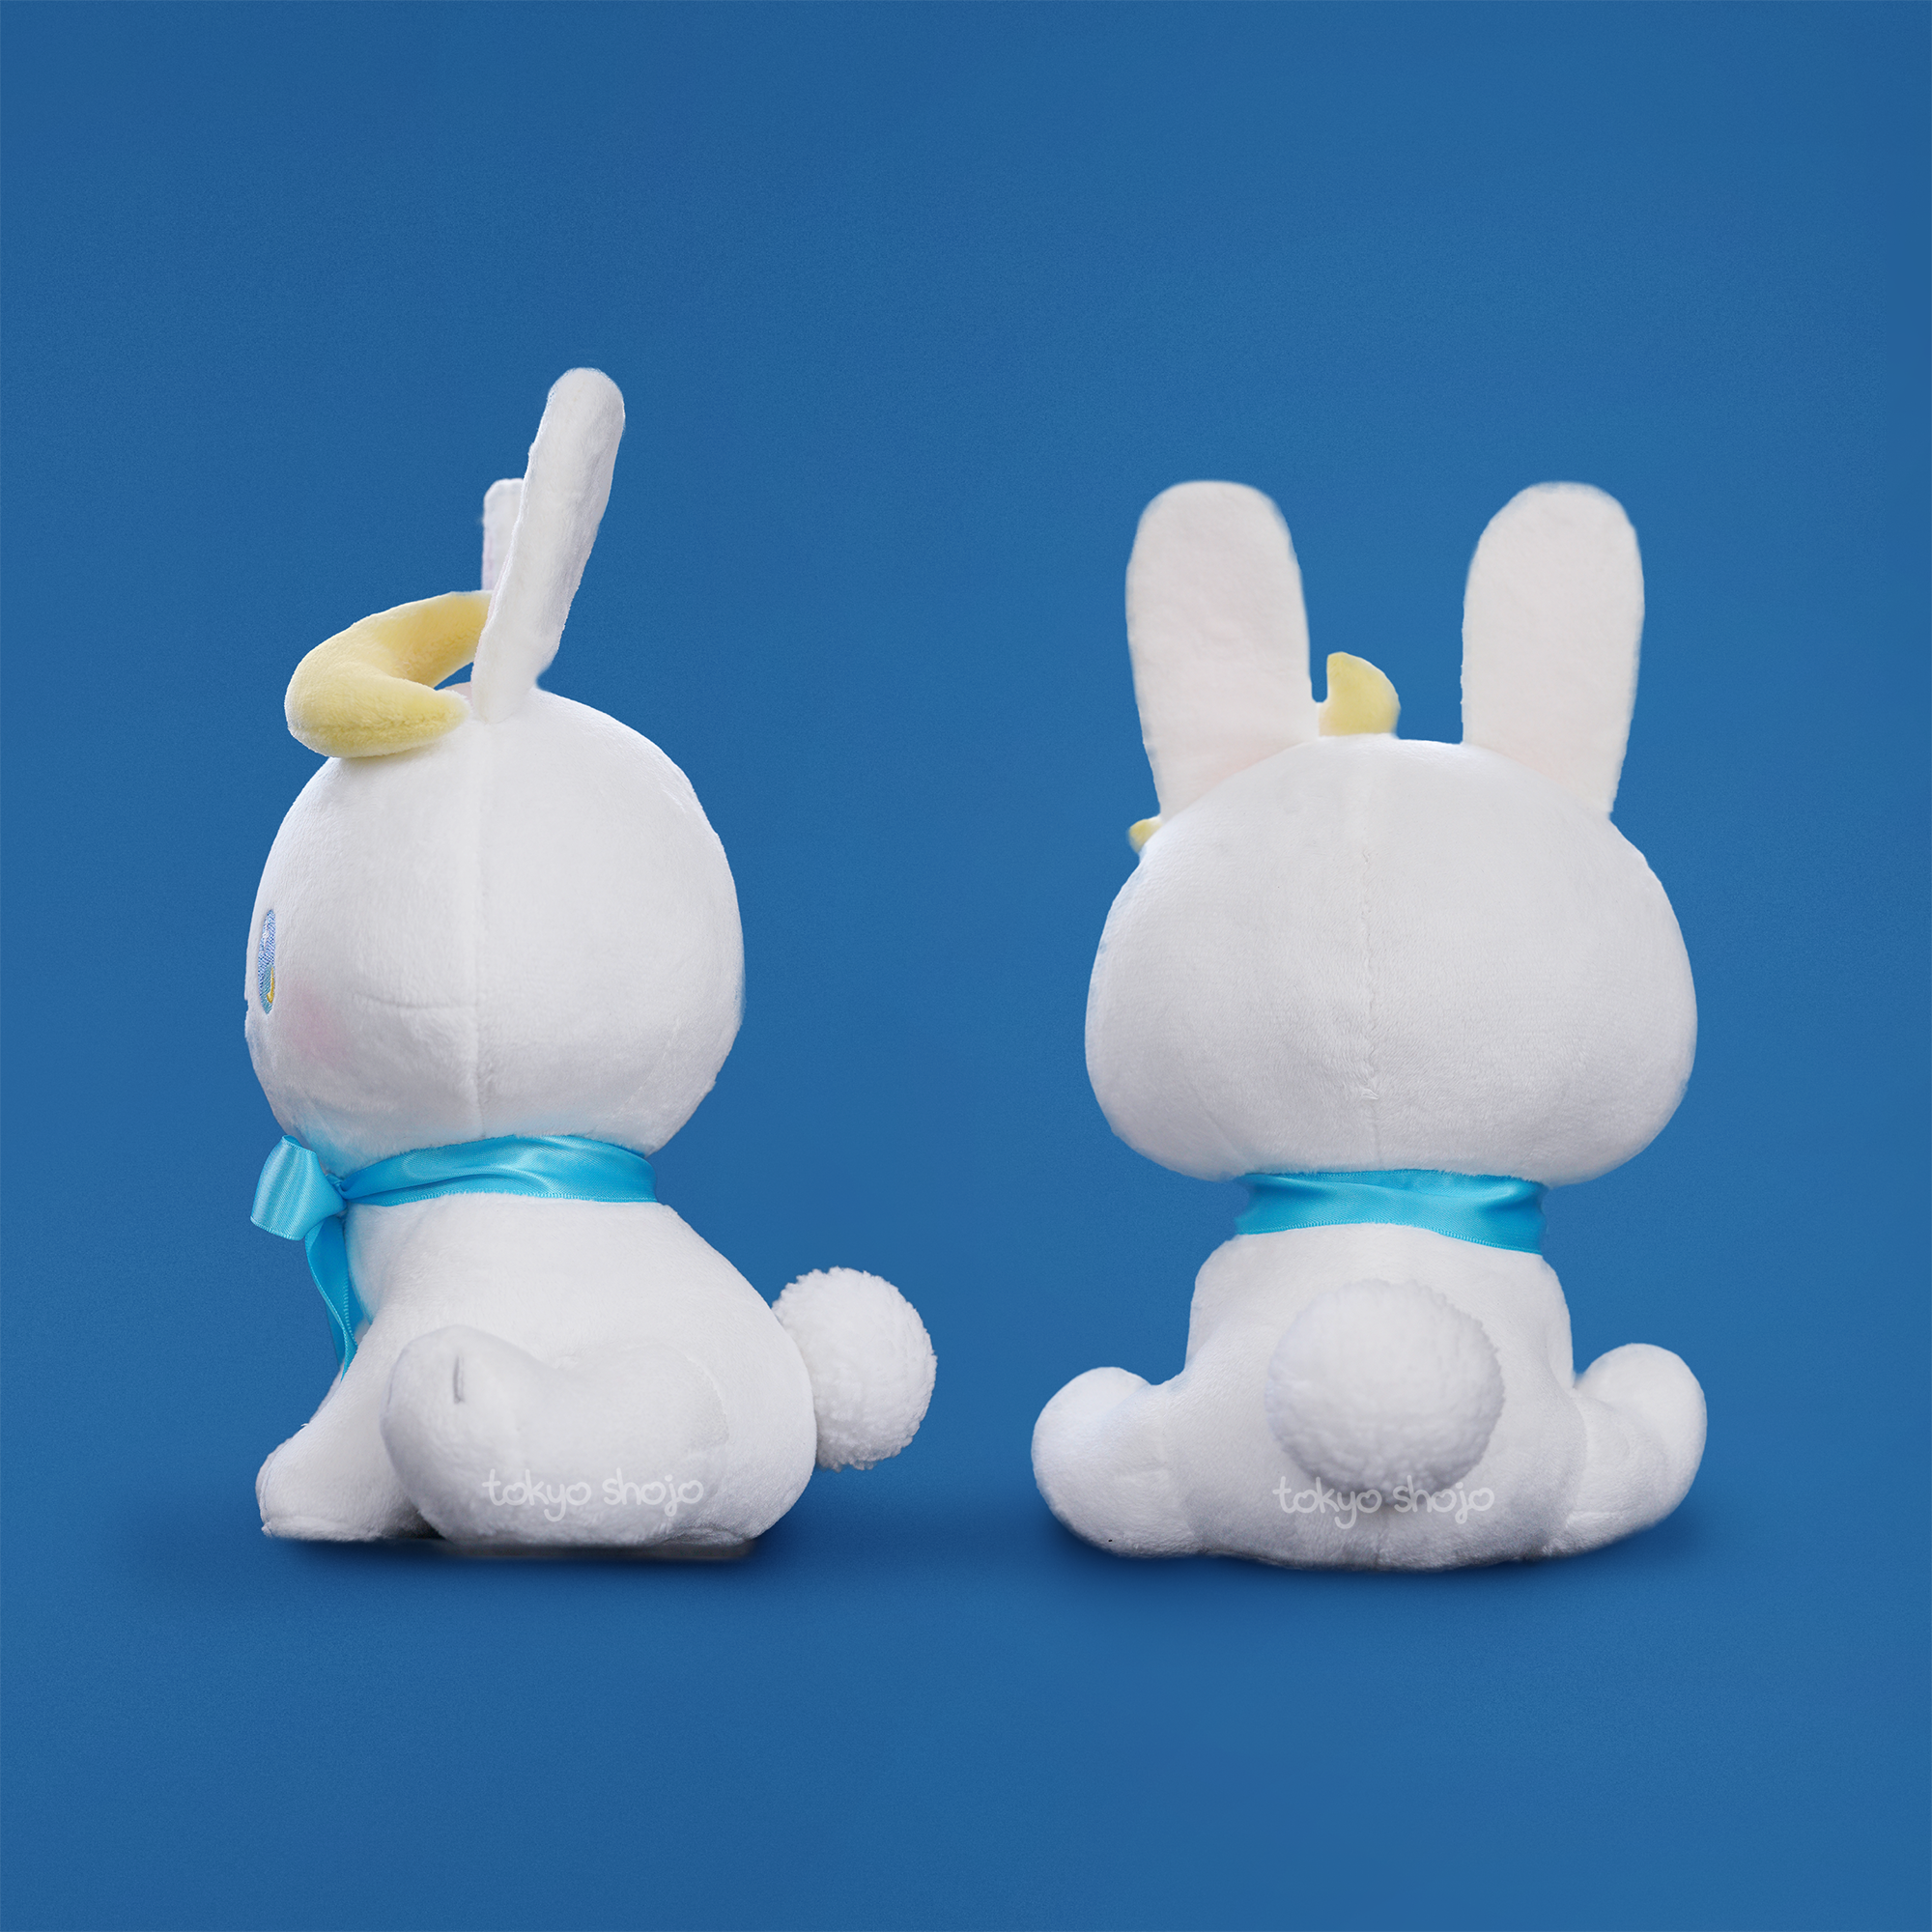 [Tokyo Shojo] Tsuki the Bunny Plushie